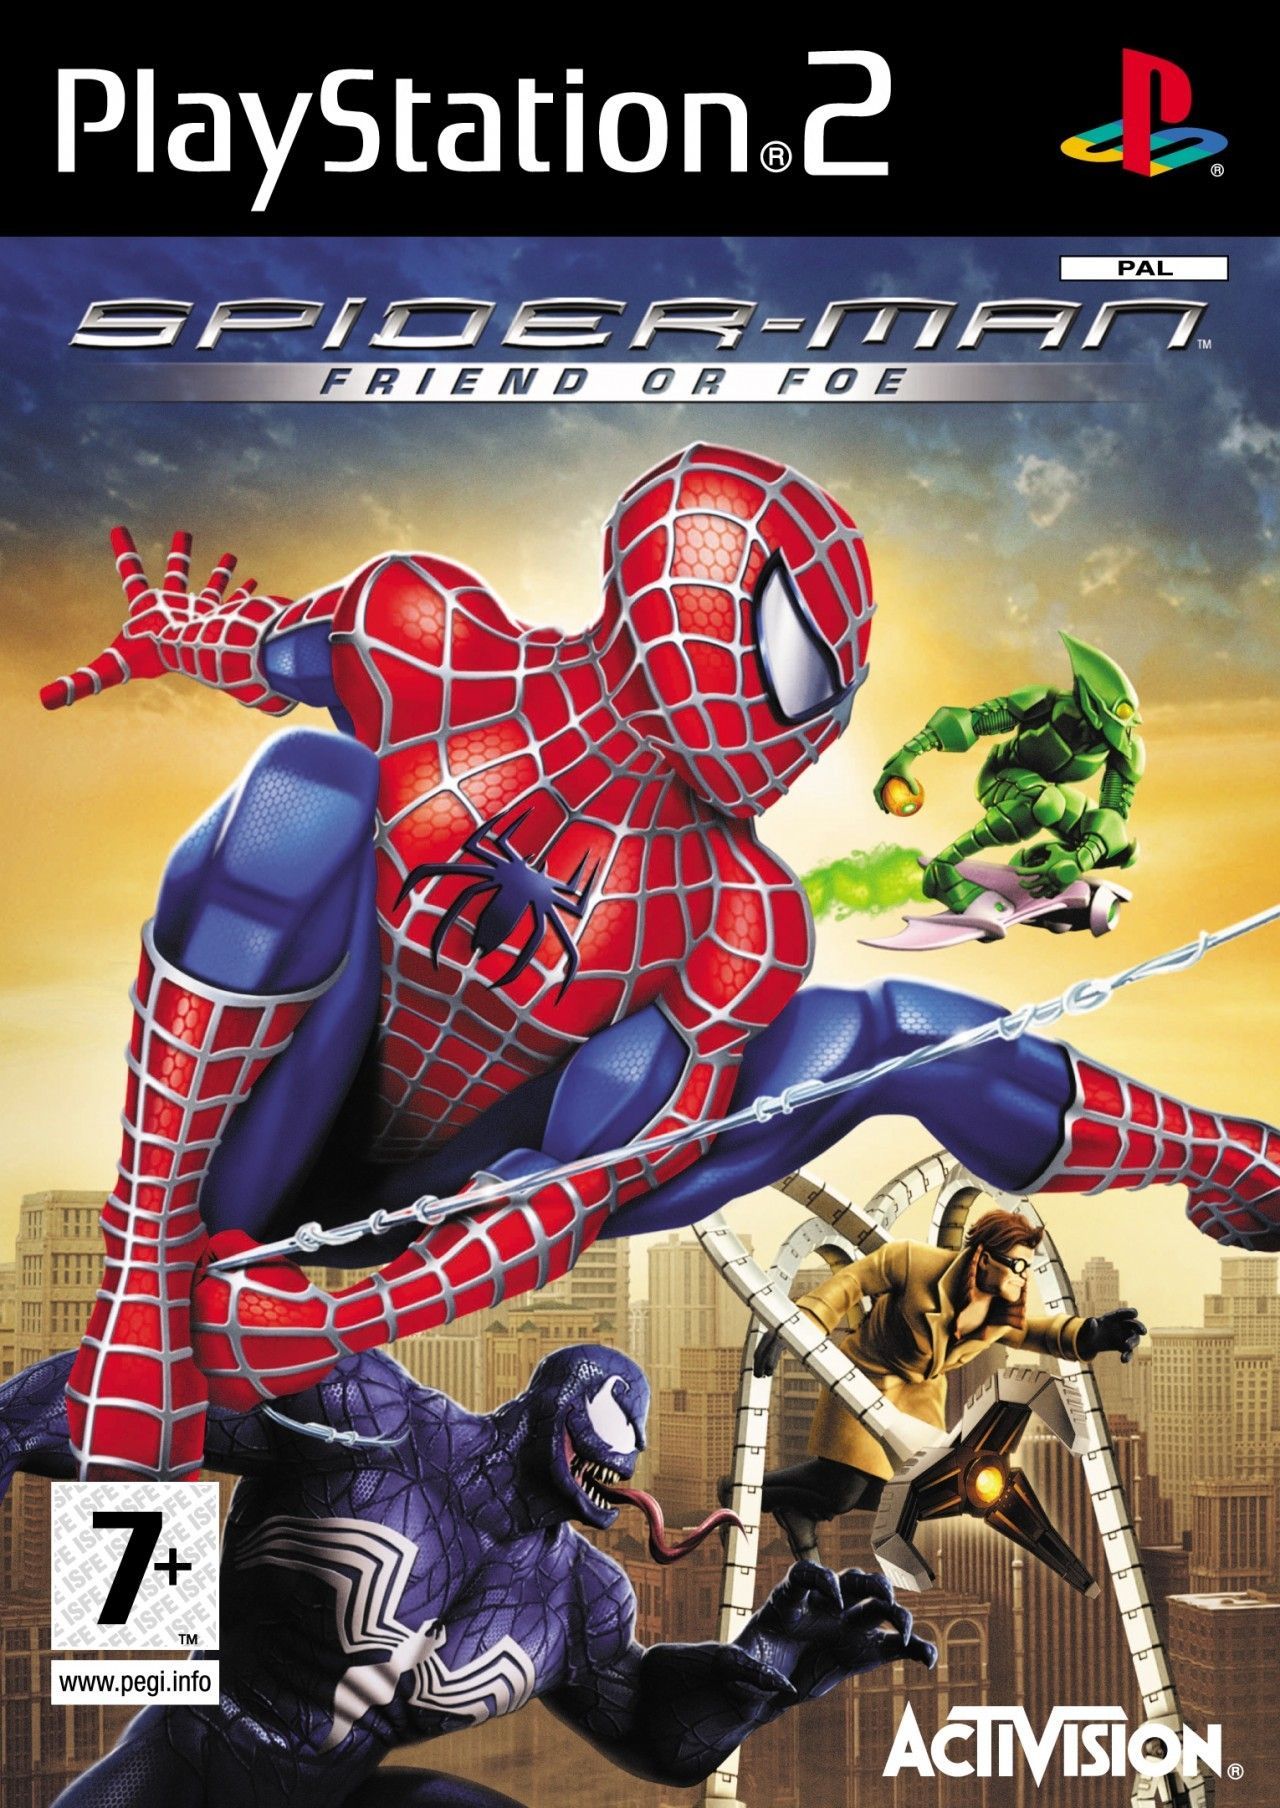 Spider-Man Amigo o Enemigo (8519) (PS2)